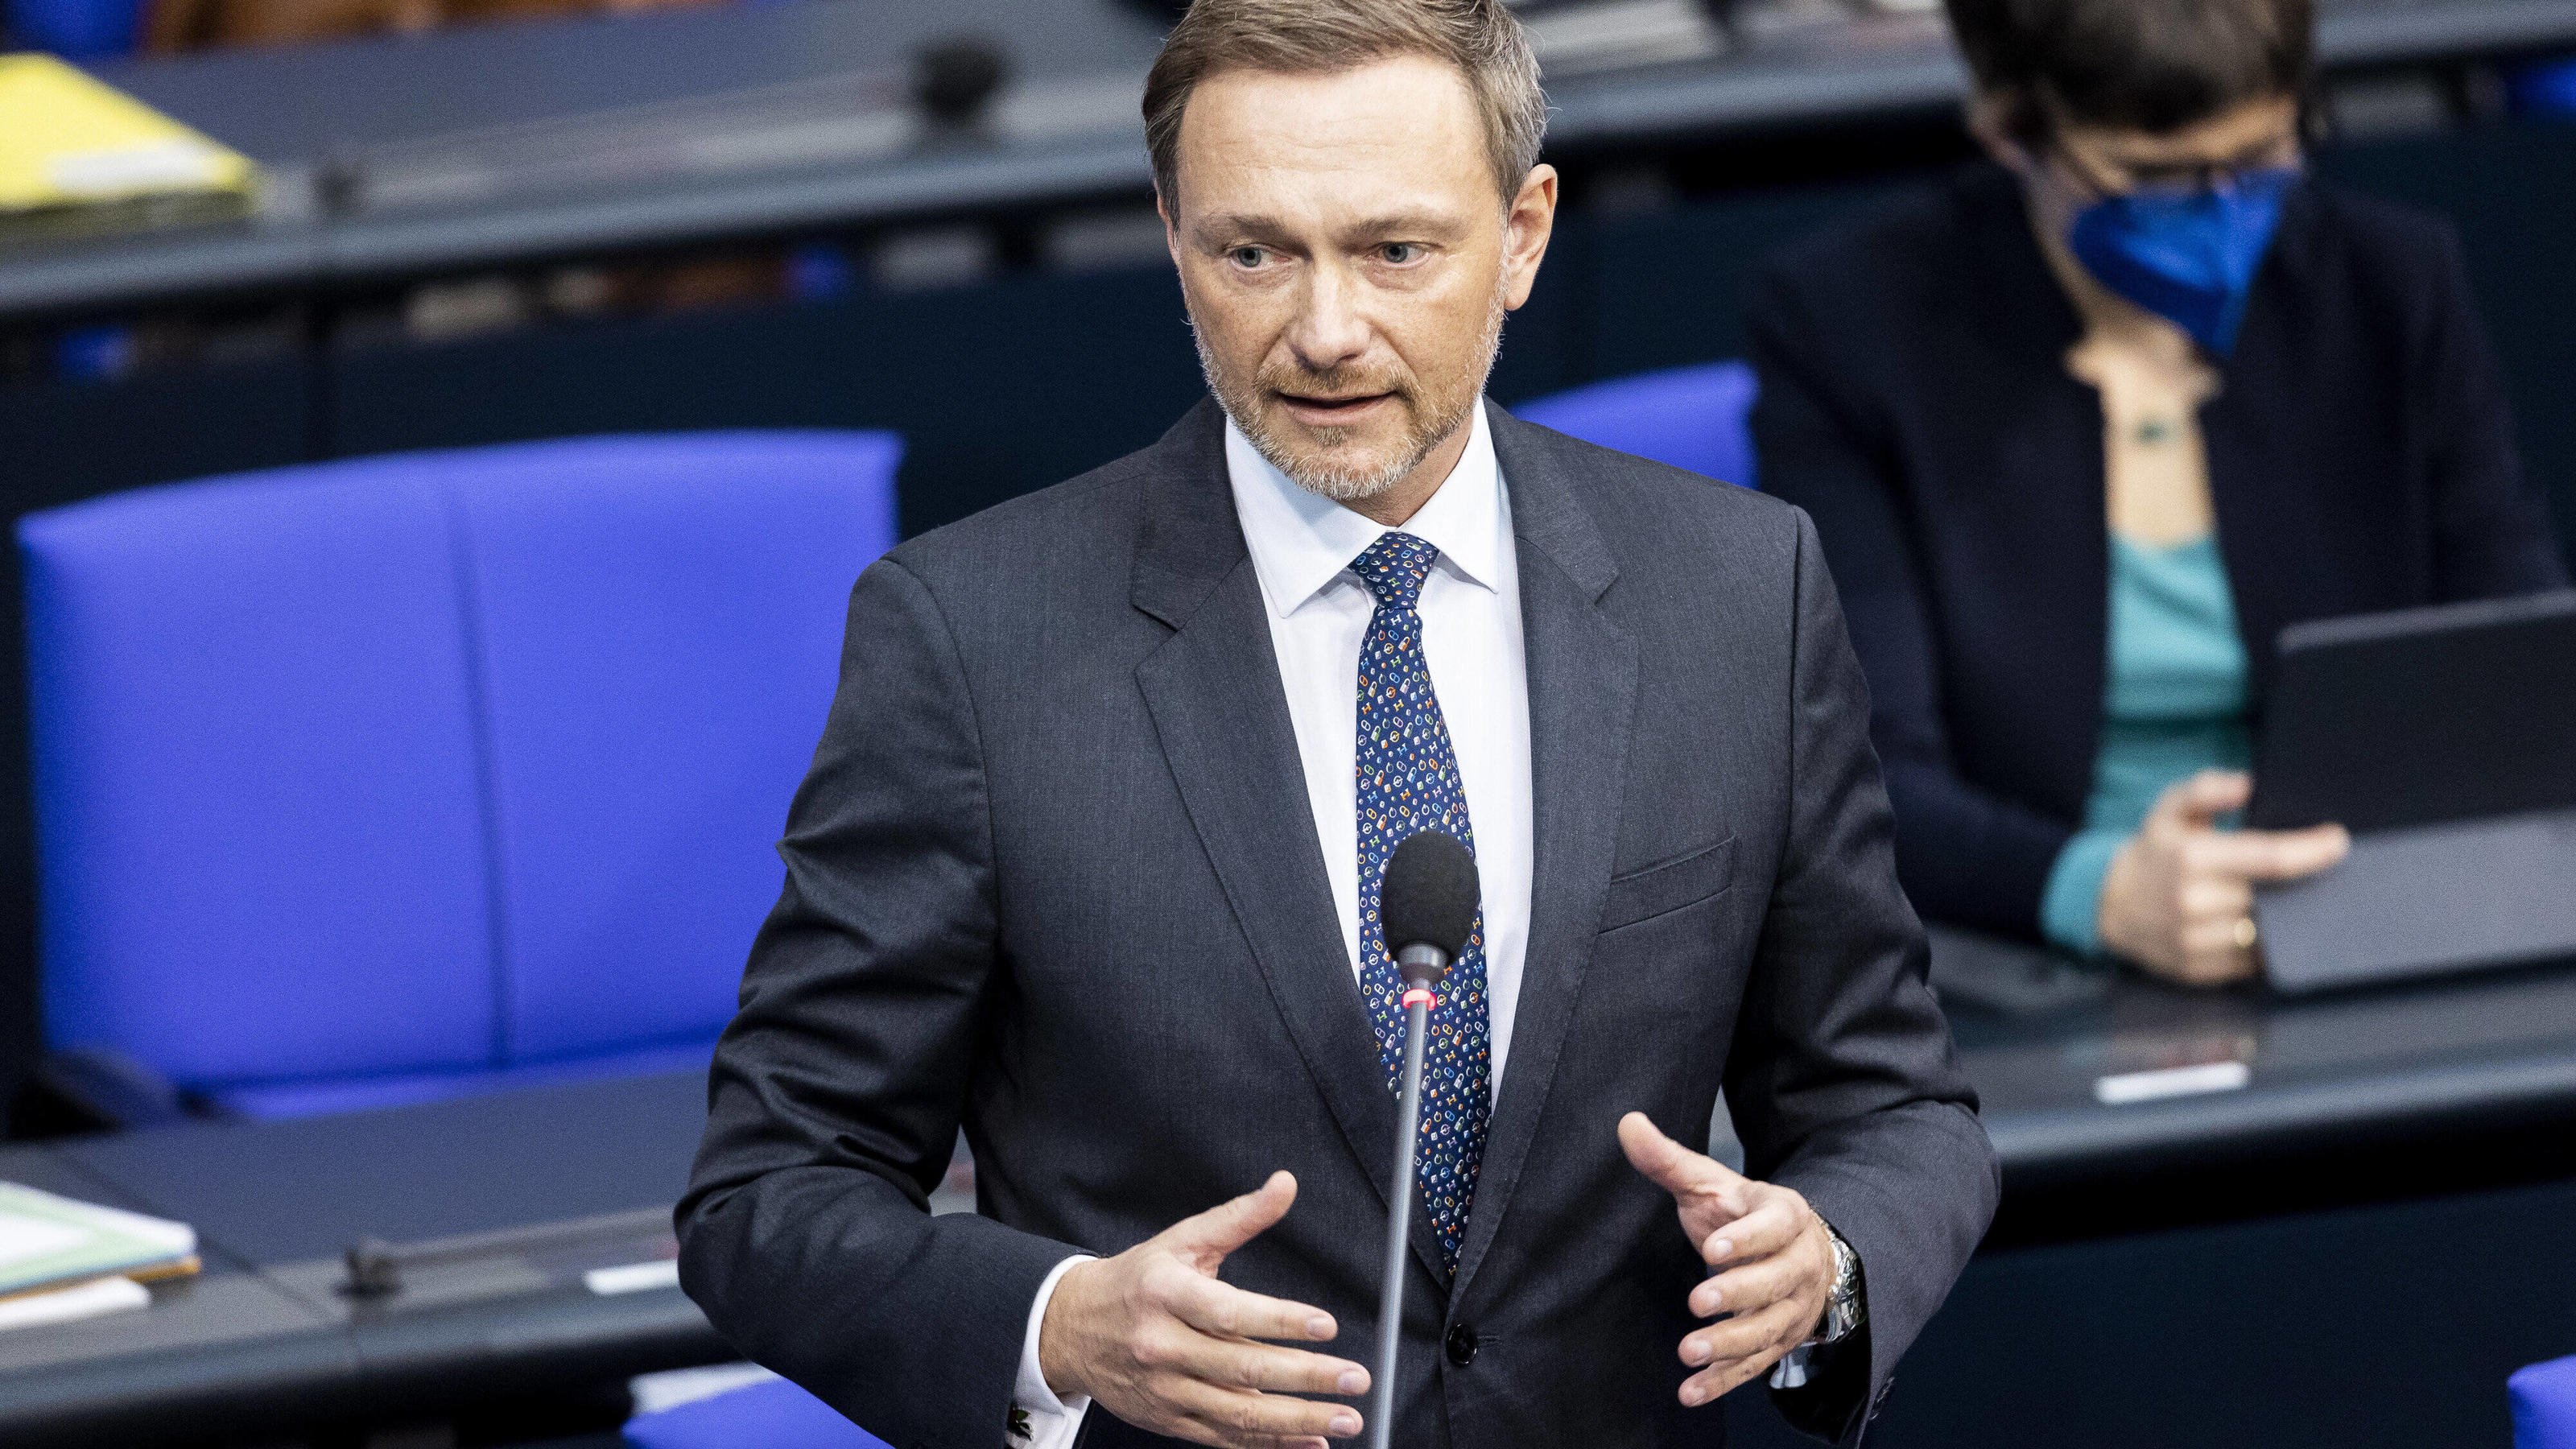  Christian Lindner FDP, Bundesminister der Finanzen, aufgenommen im Rahmen eine Regierungsbefragung im Deutschen Bundestag in Berlin.